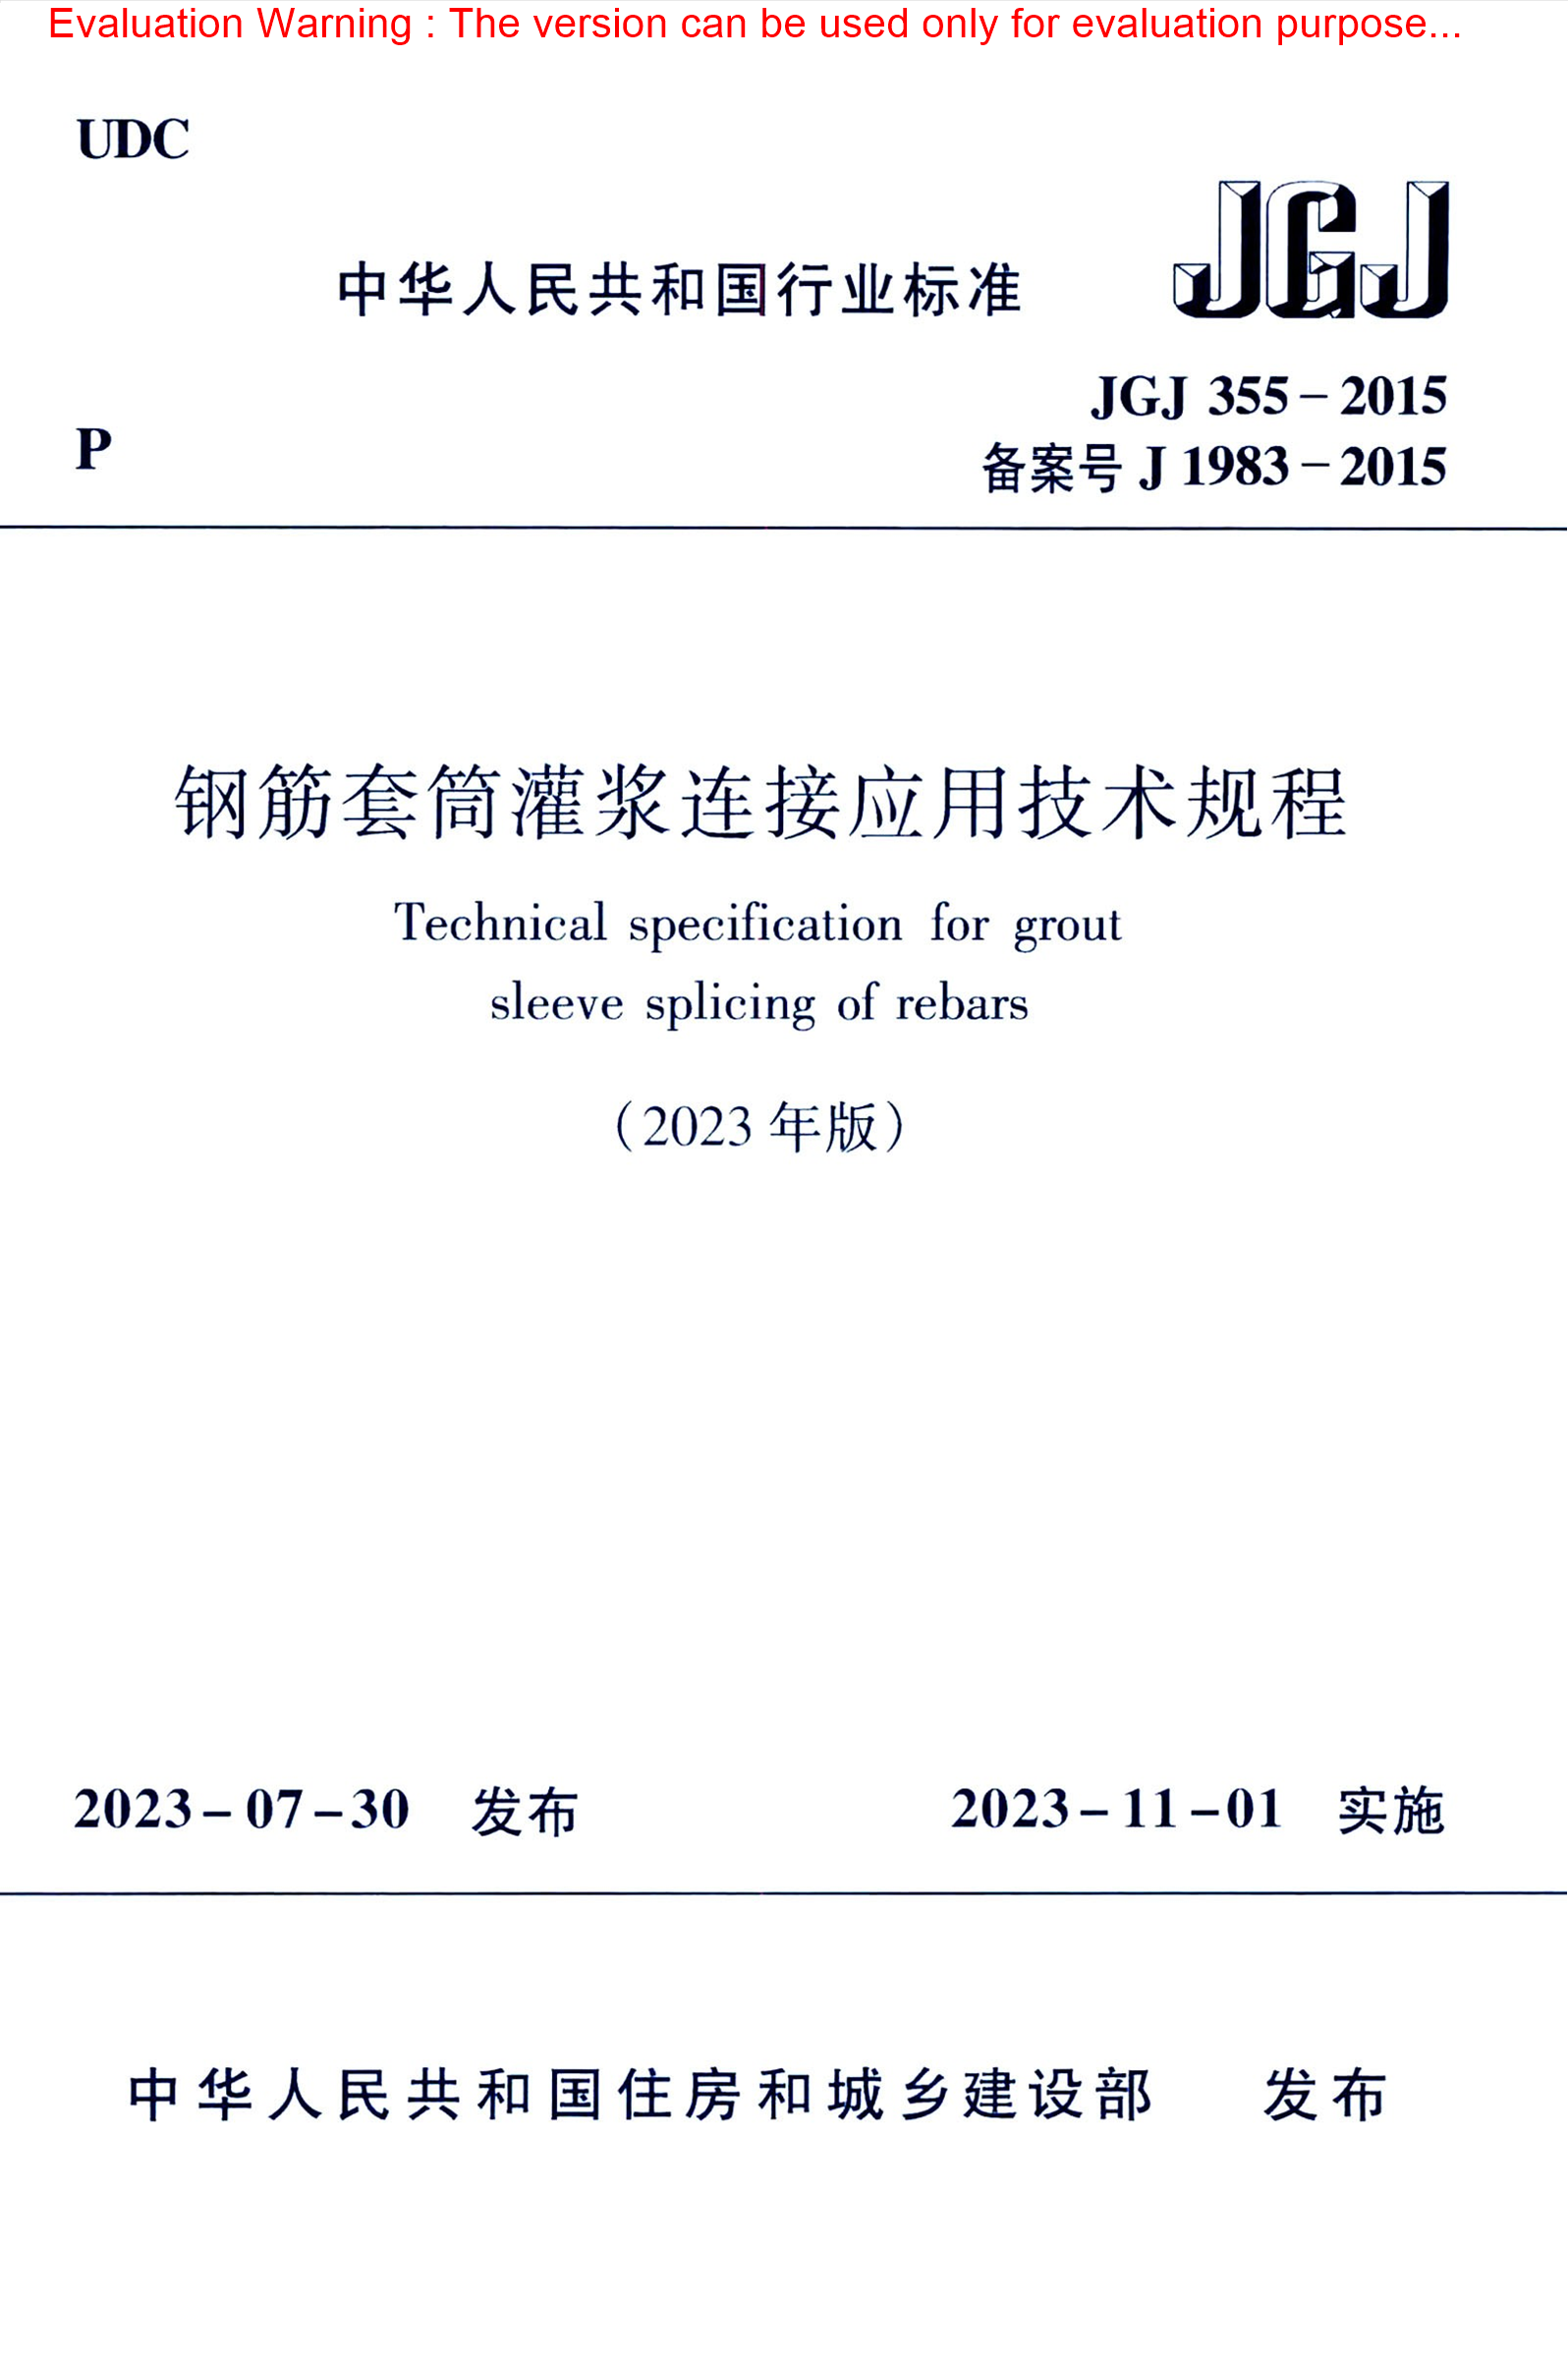 JGJ 355-2015 (2023年版)钢筋套筒灌浆连接应用技术规程